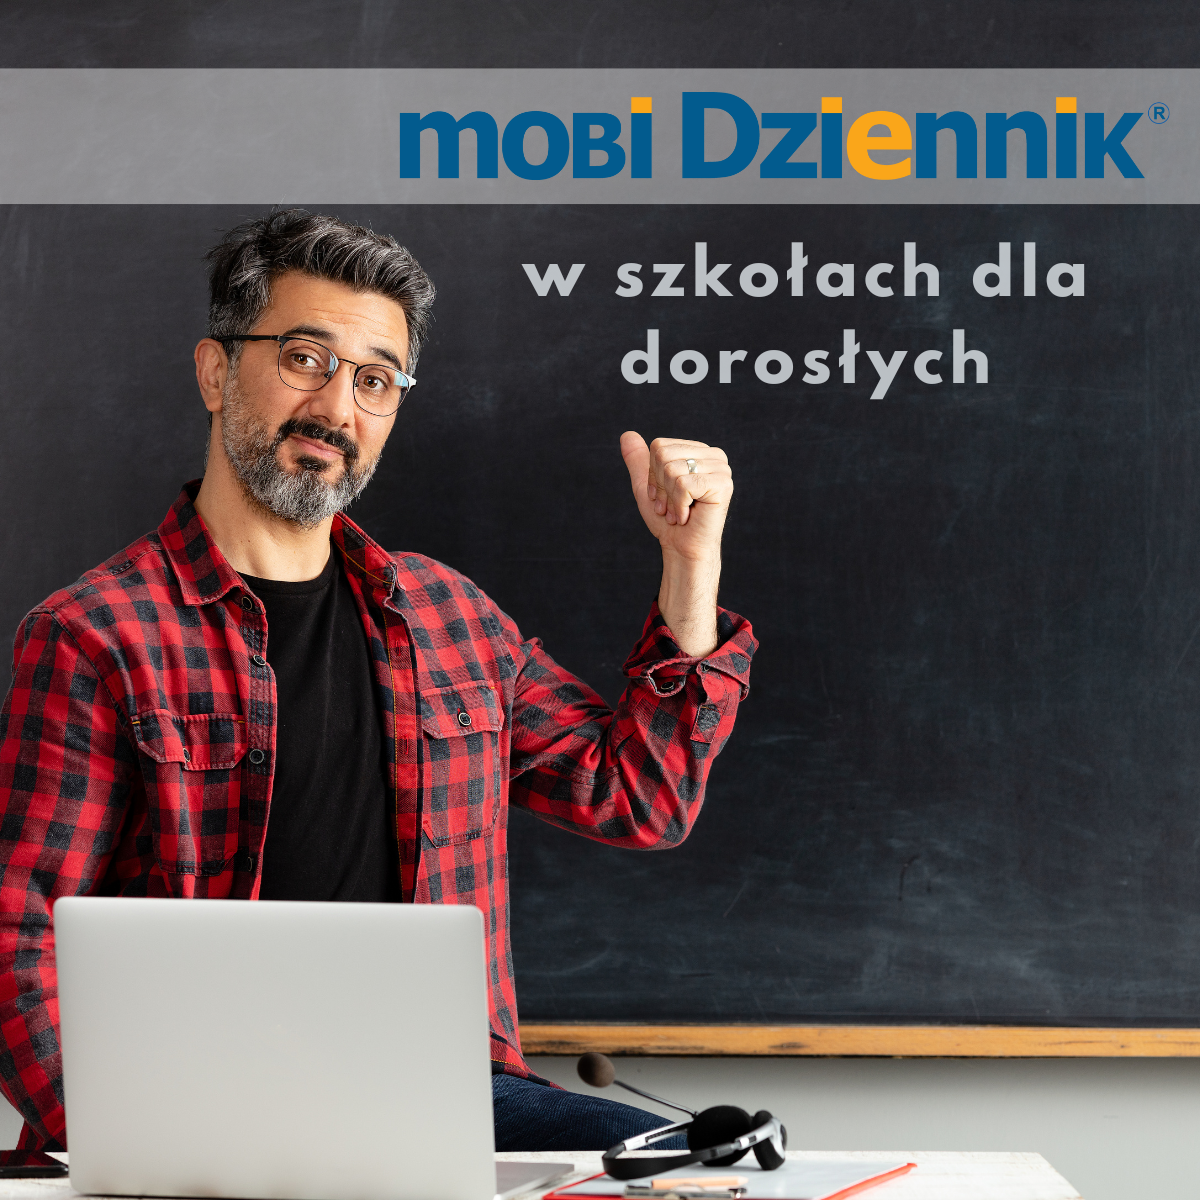 Mobidziennik - szkoła dla dorosłych